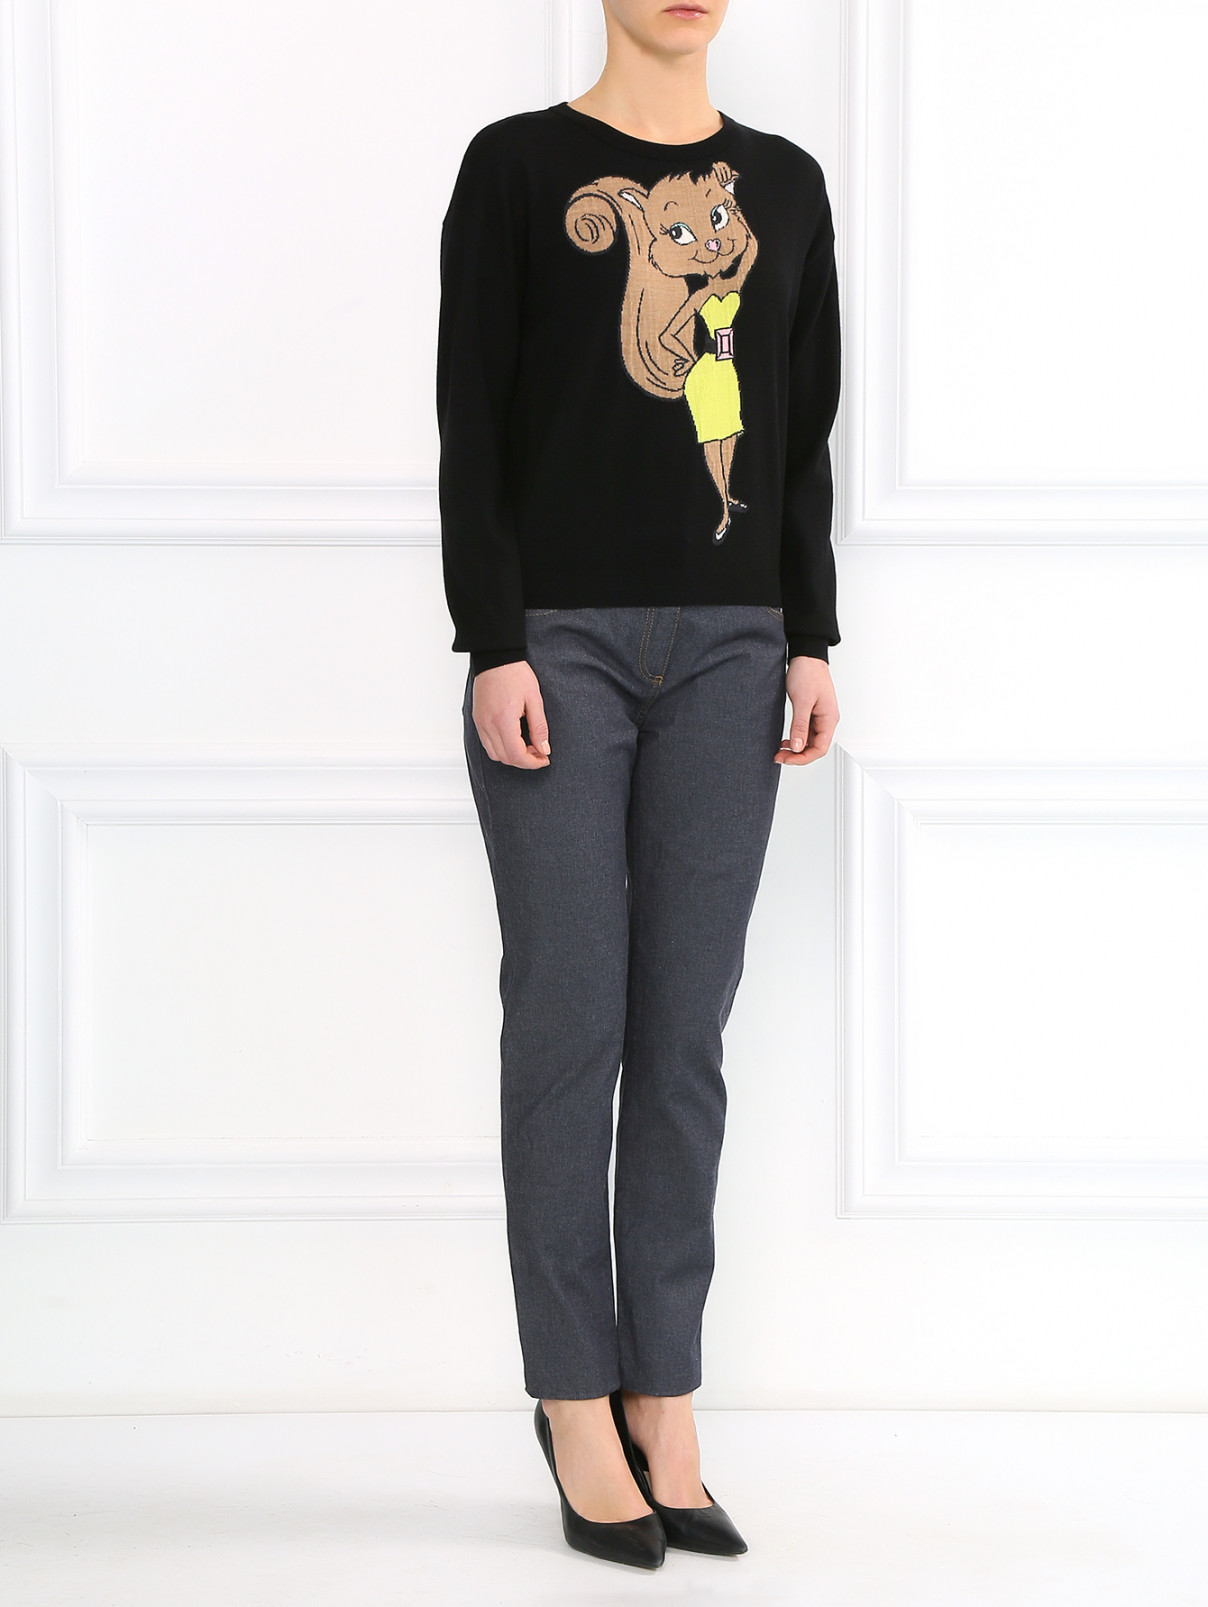 Джемпер с вышивкой Moschino Boutique  –  Модель Общий вид  – Цвет:  Черный